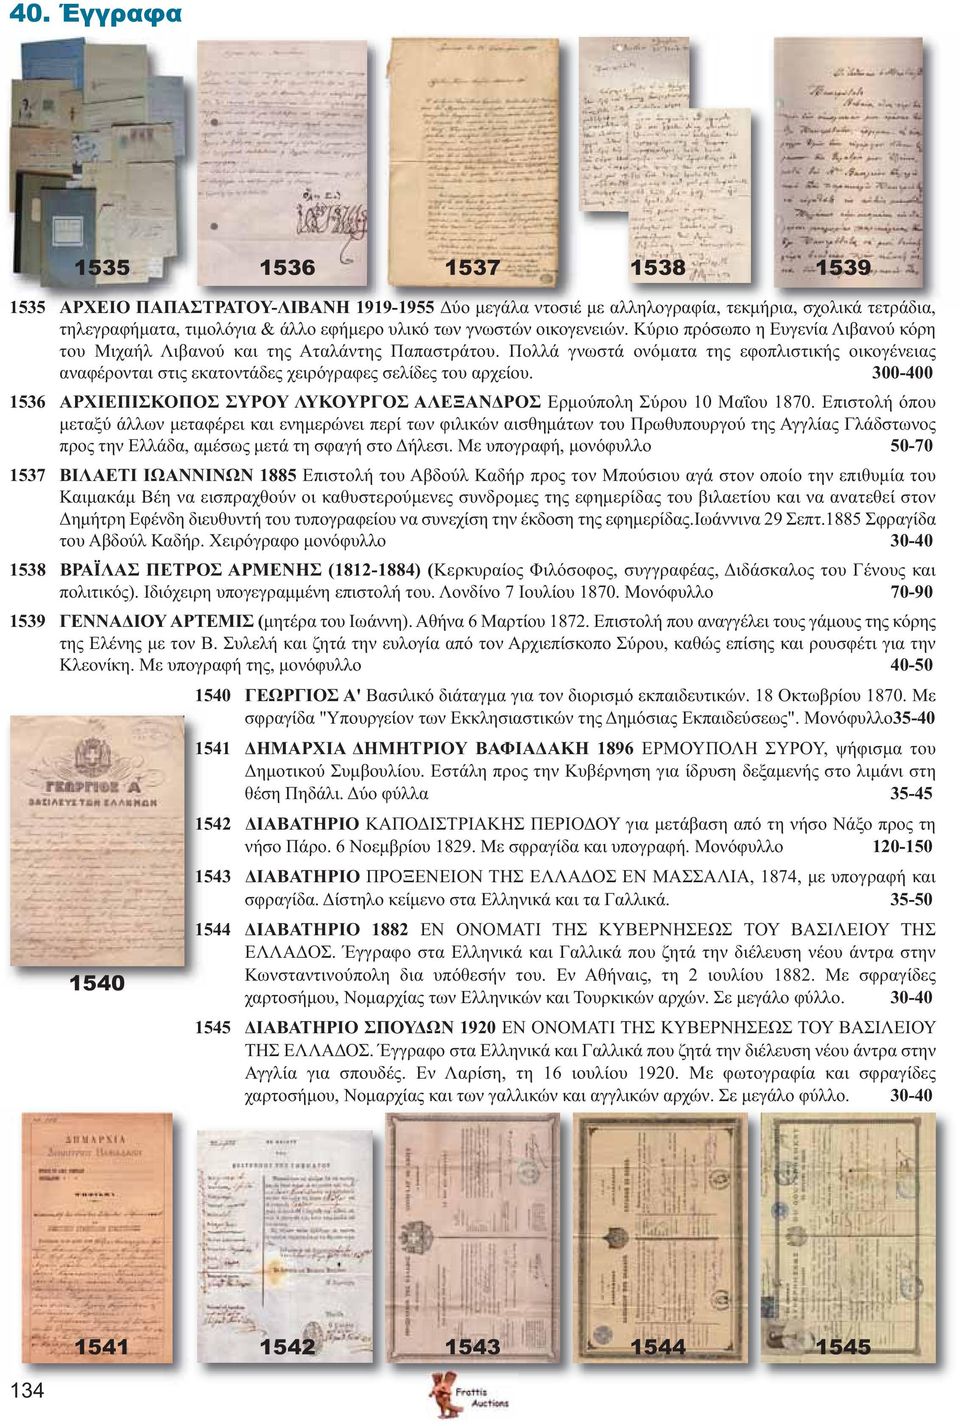 Πολλά γνωστά ονόματα της εφοπλιστικής οικογένειας αναφέρονται στις εκατοντάδες χειρόγραφες σελίδες του αρχείου. 300-400 1536 ΑΡΧΙΕΠΙΣΚΟΠΟΣ ΣΥΡΟΥ ΛΥΚΟΥΡΓΟΣ ΑΛΕΞΑΝΔΡΟΣ Ερμούπολη Σύρου 10 Μαΐου 1870.